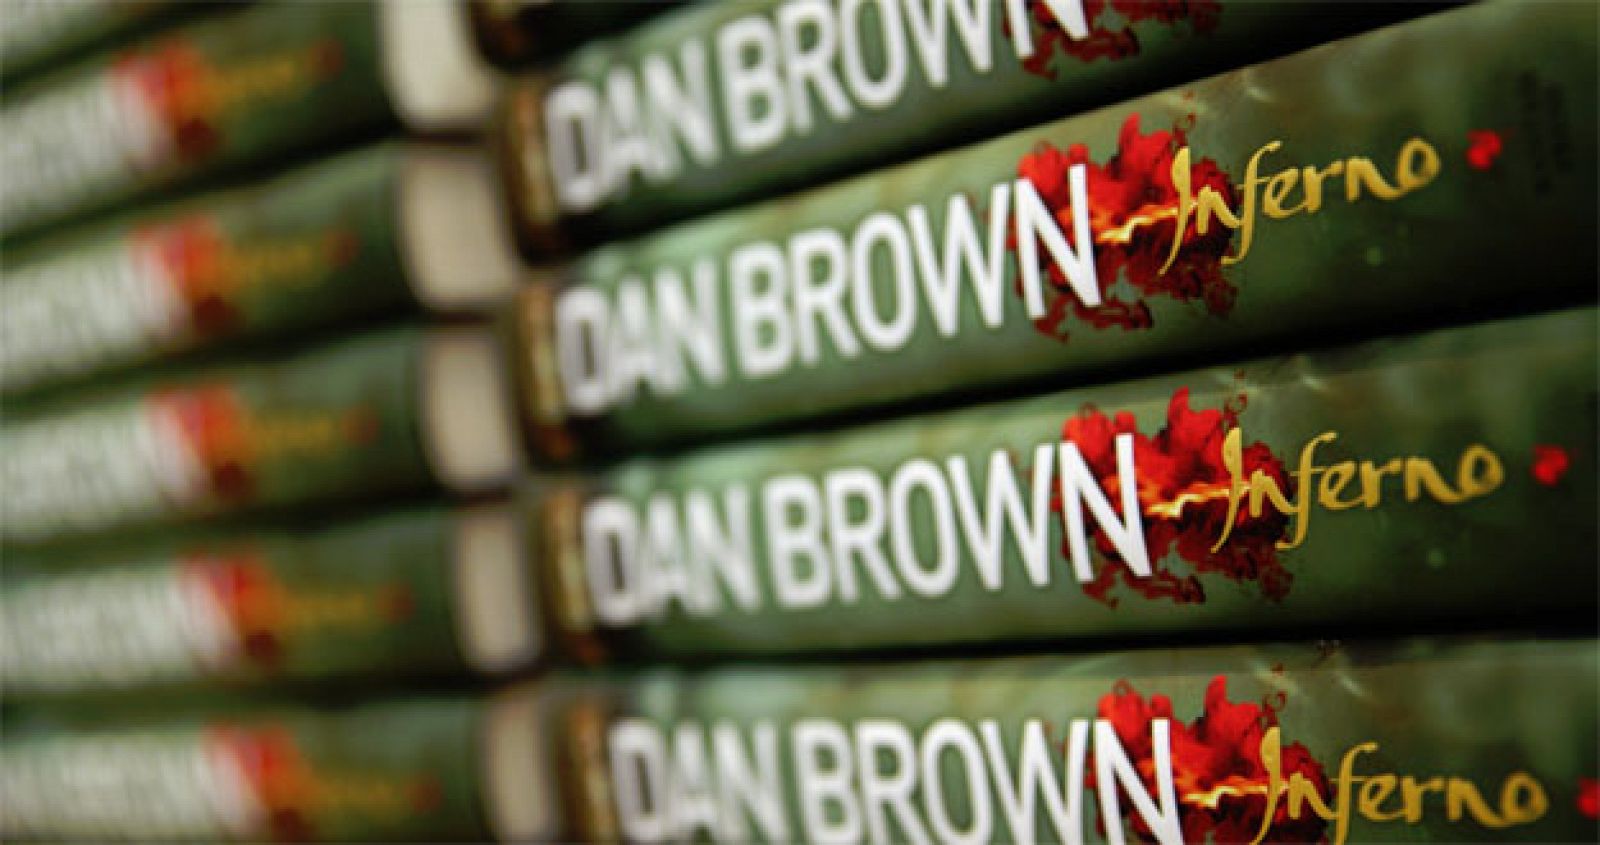 Las cifras de venta de "Infierno", de Dan Brown (Planeta), fueron menores de las esperadas.